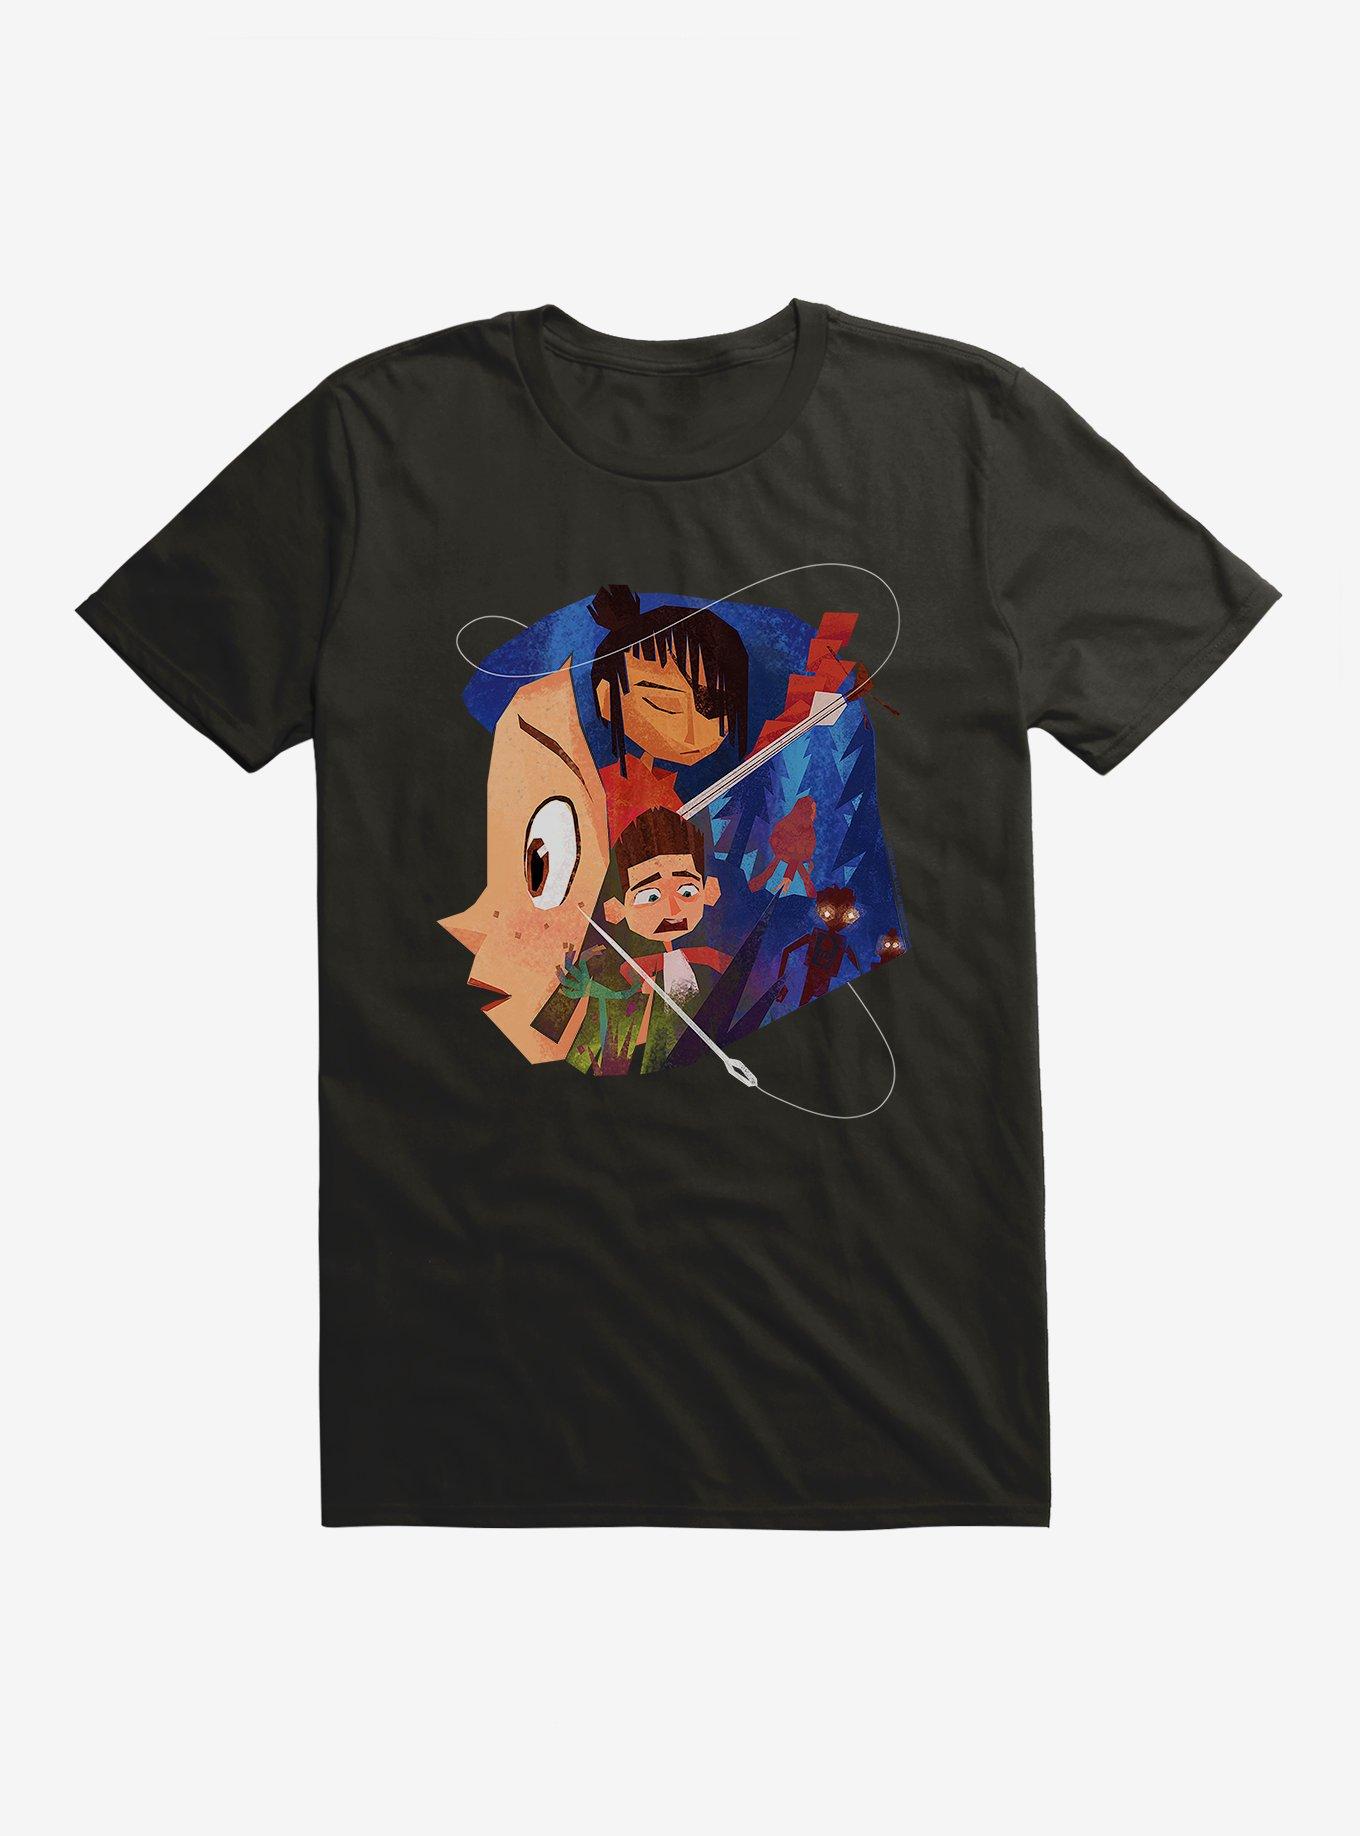 Laika Fan Art Winner Woven Together T-Shirt